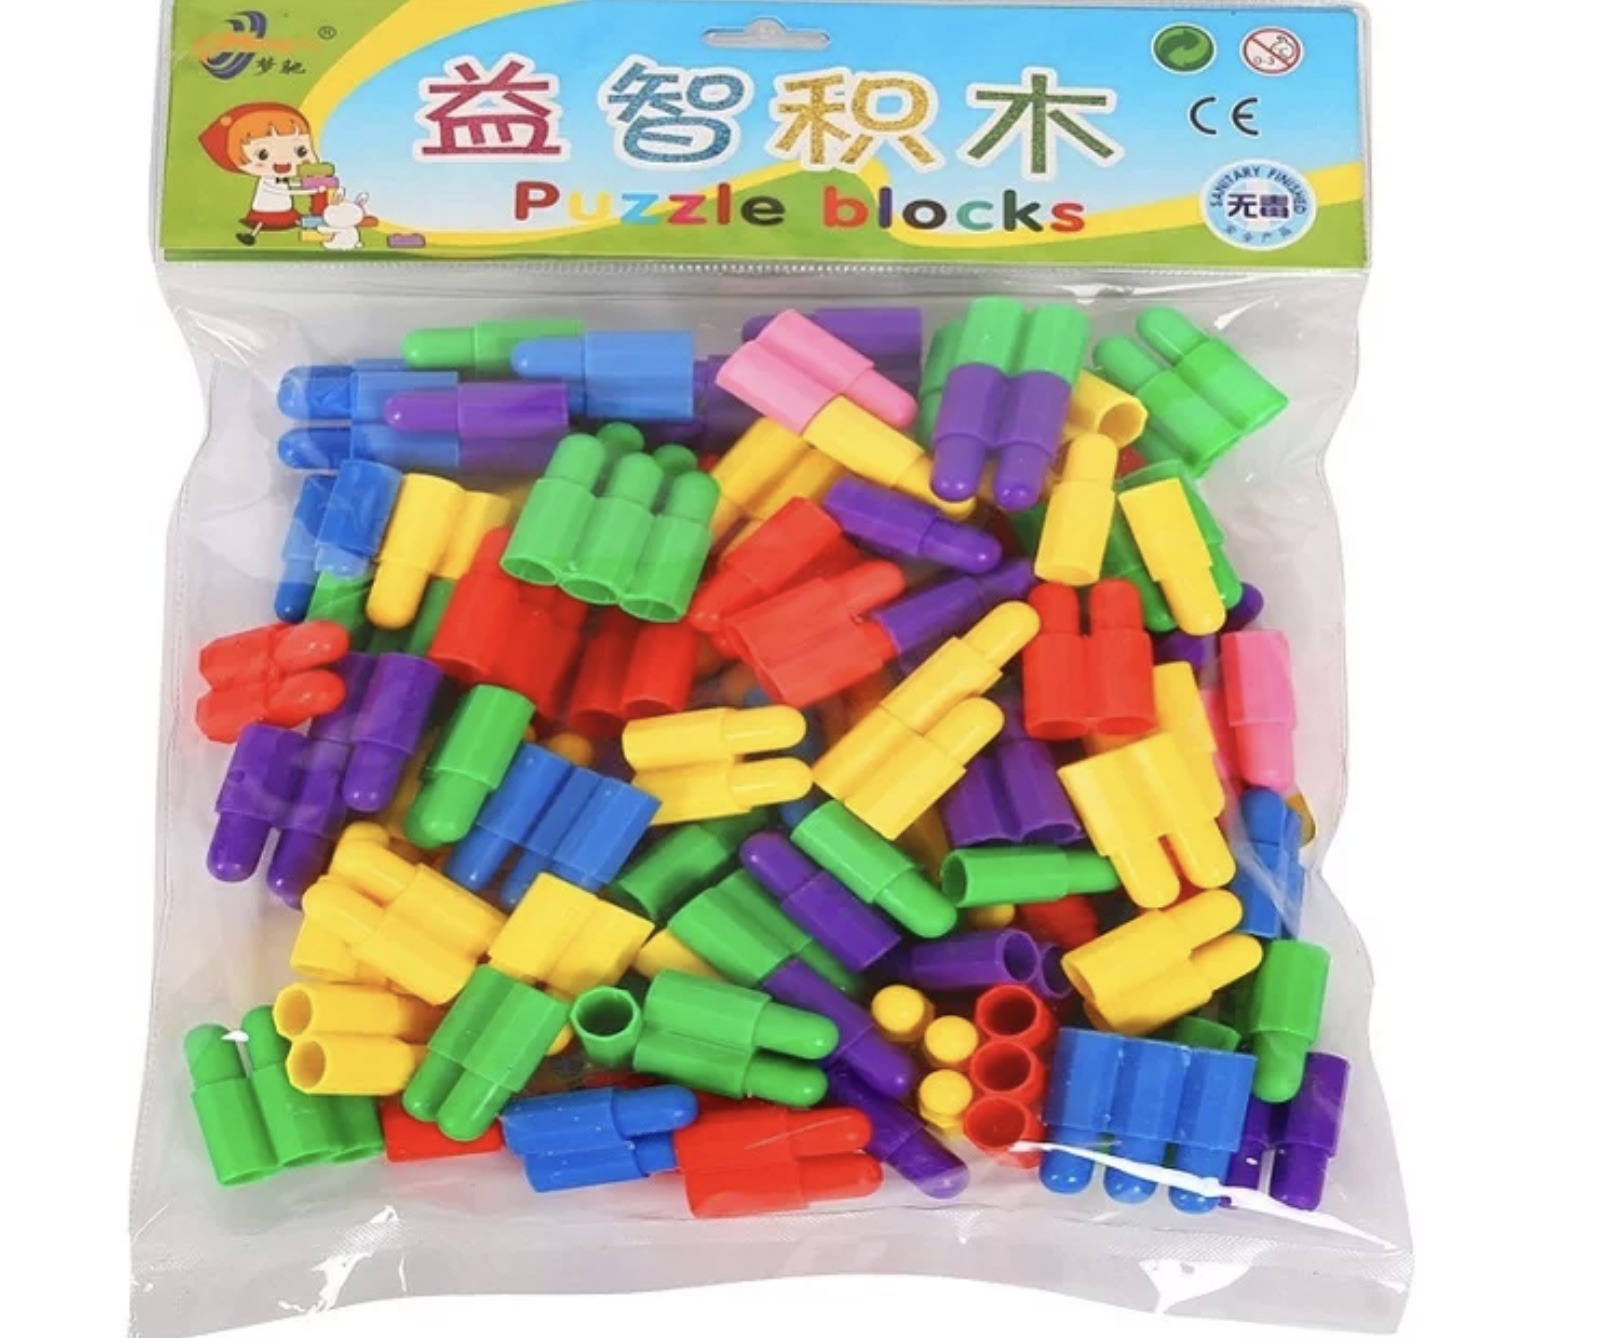 Set de construit din plastic pentru copii de vârsta trei ani care se pot juca și inventa diverse jocuri cu acest set joc care conține mai multe piese